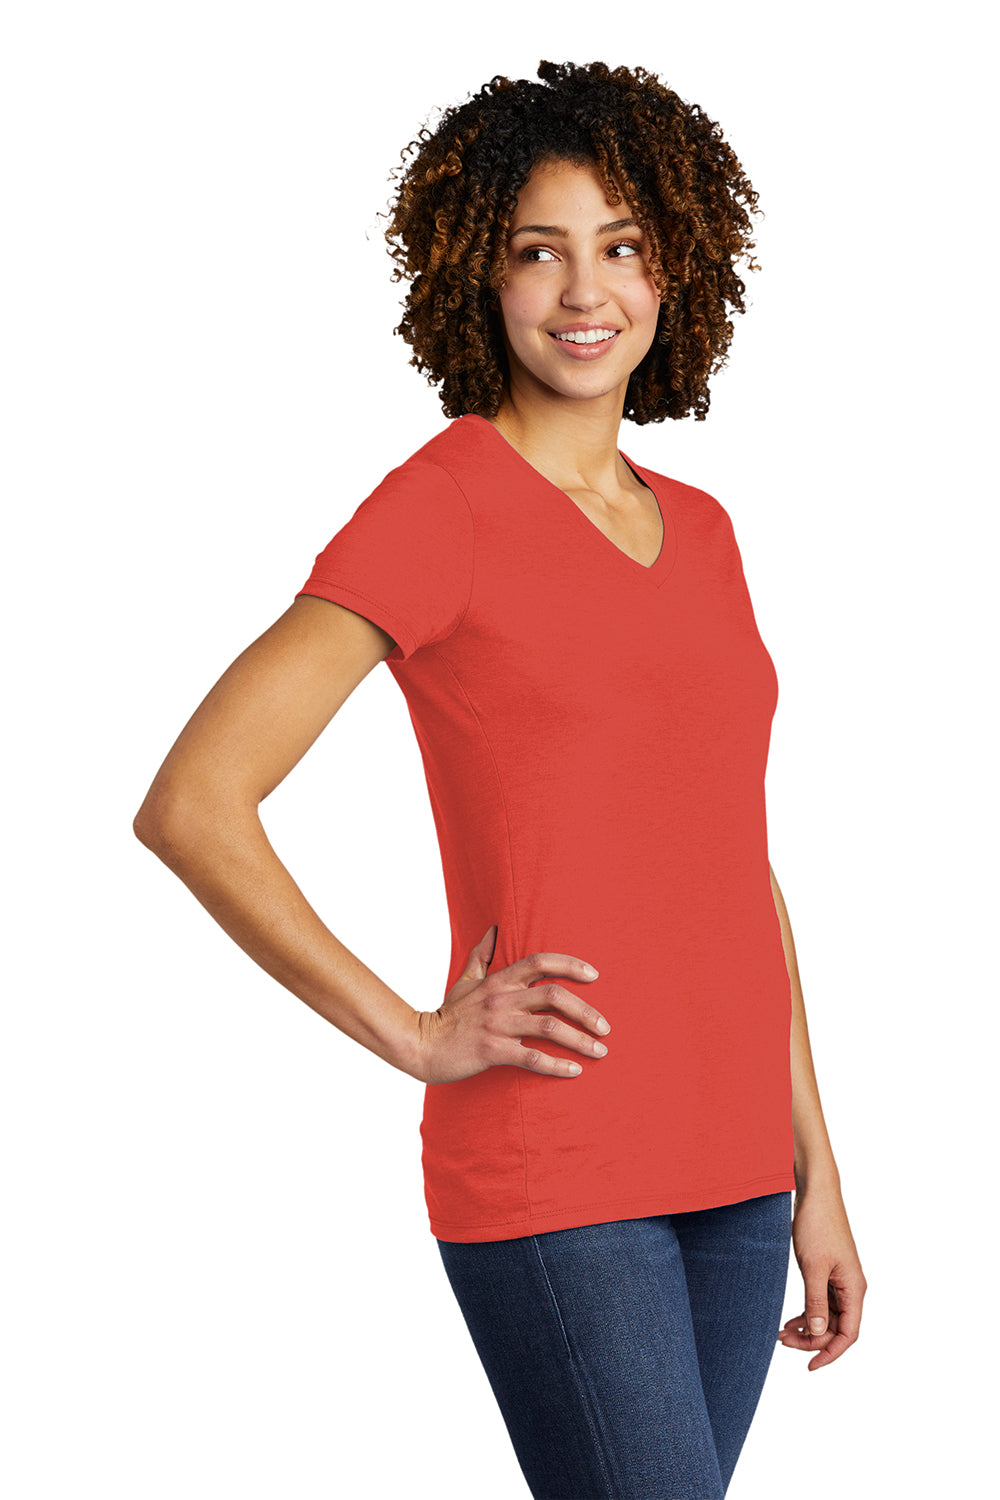 Allmade AL2018 Womens Short Sleeve V-Neck T-Shirt Desert Sun Red Model 3Q